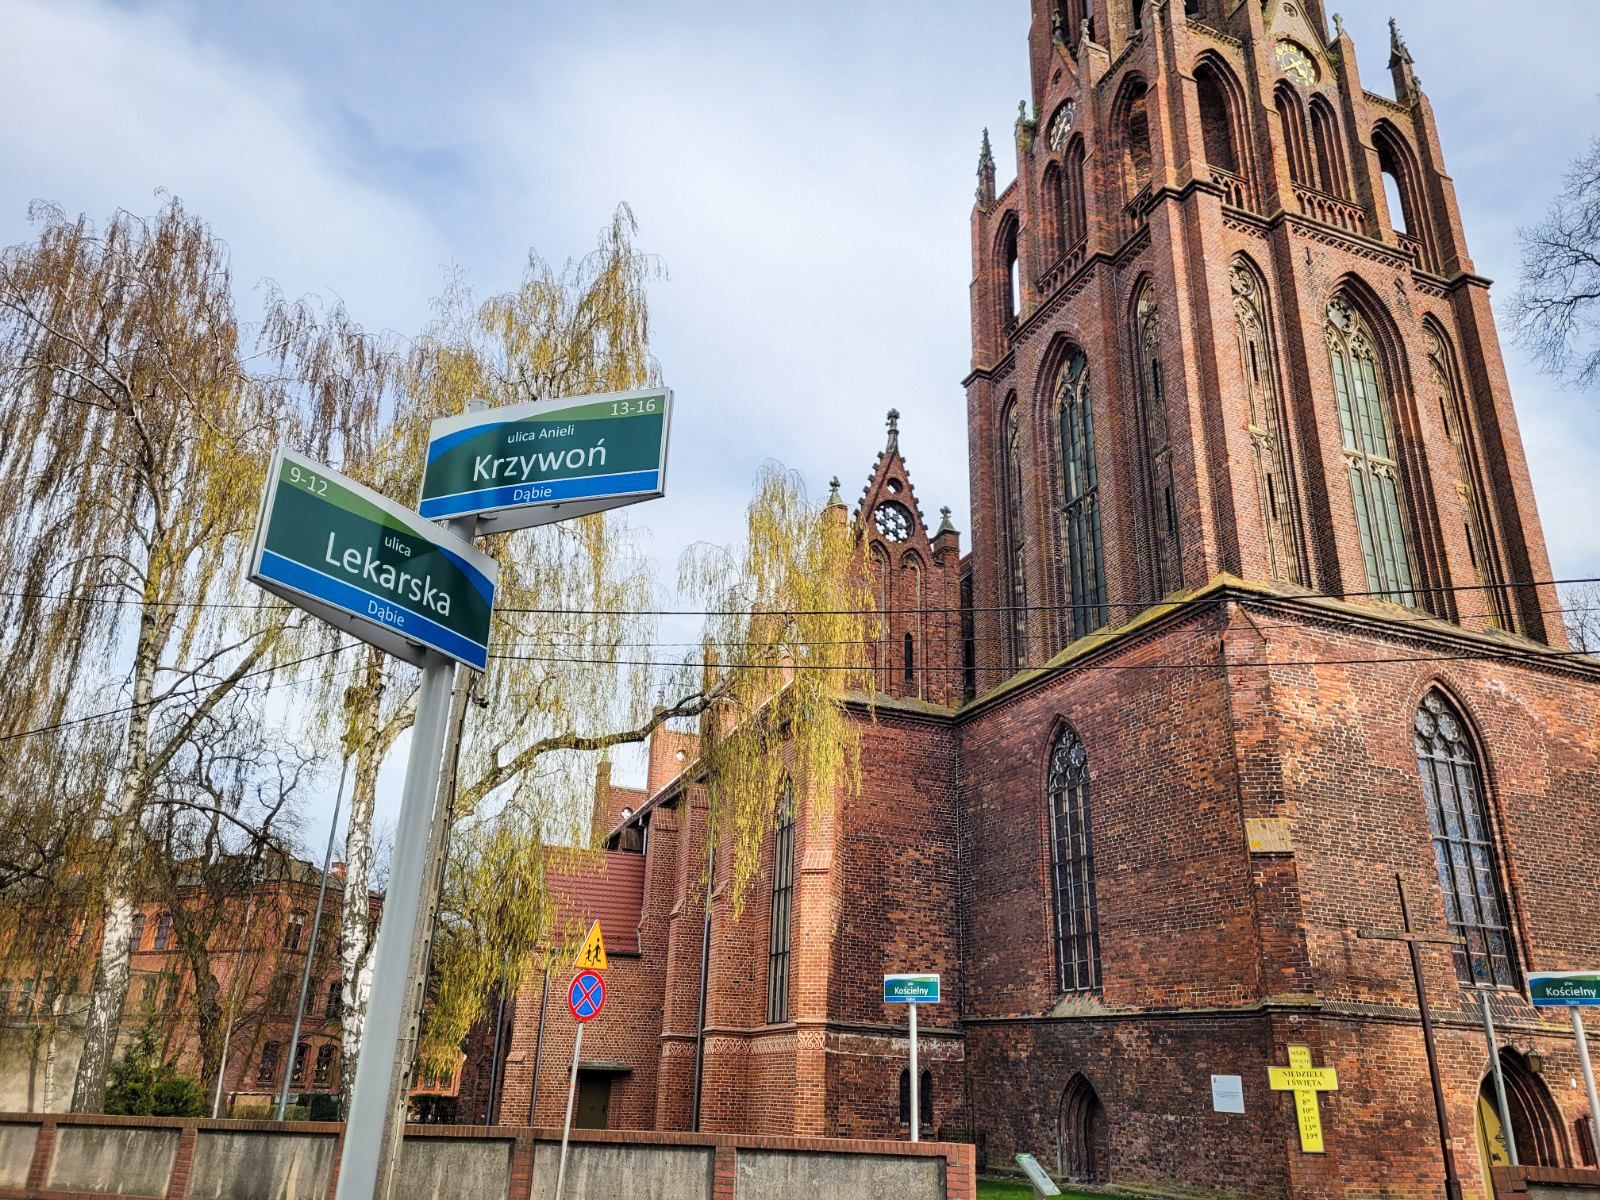 Skrzyżowanie z nazwami ulic: Krzywoń i Lekarska, w tle kościół